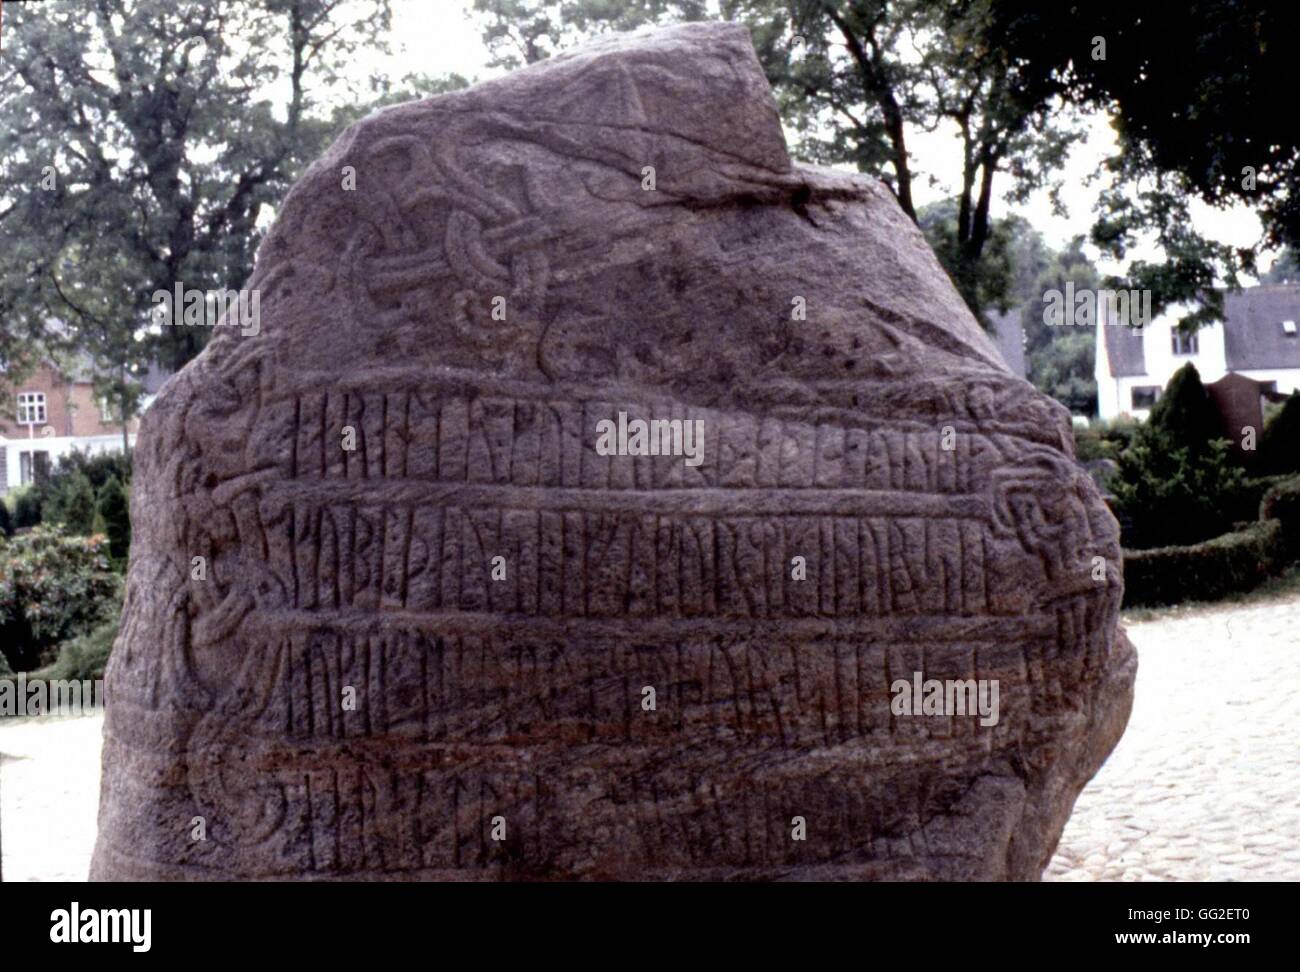 Pietra runica destinati al culto degli antenati . Il primo esempio di scrittura danese: "Re Harald aveva la pietra eretto in memoria di suo padre, Gorm' 983 Danimarca Danimarca. Jelling Foto Stock